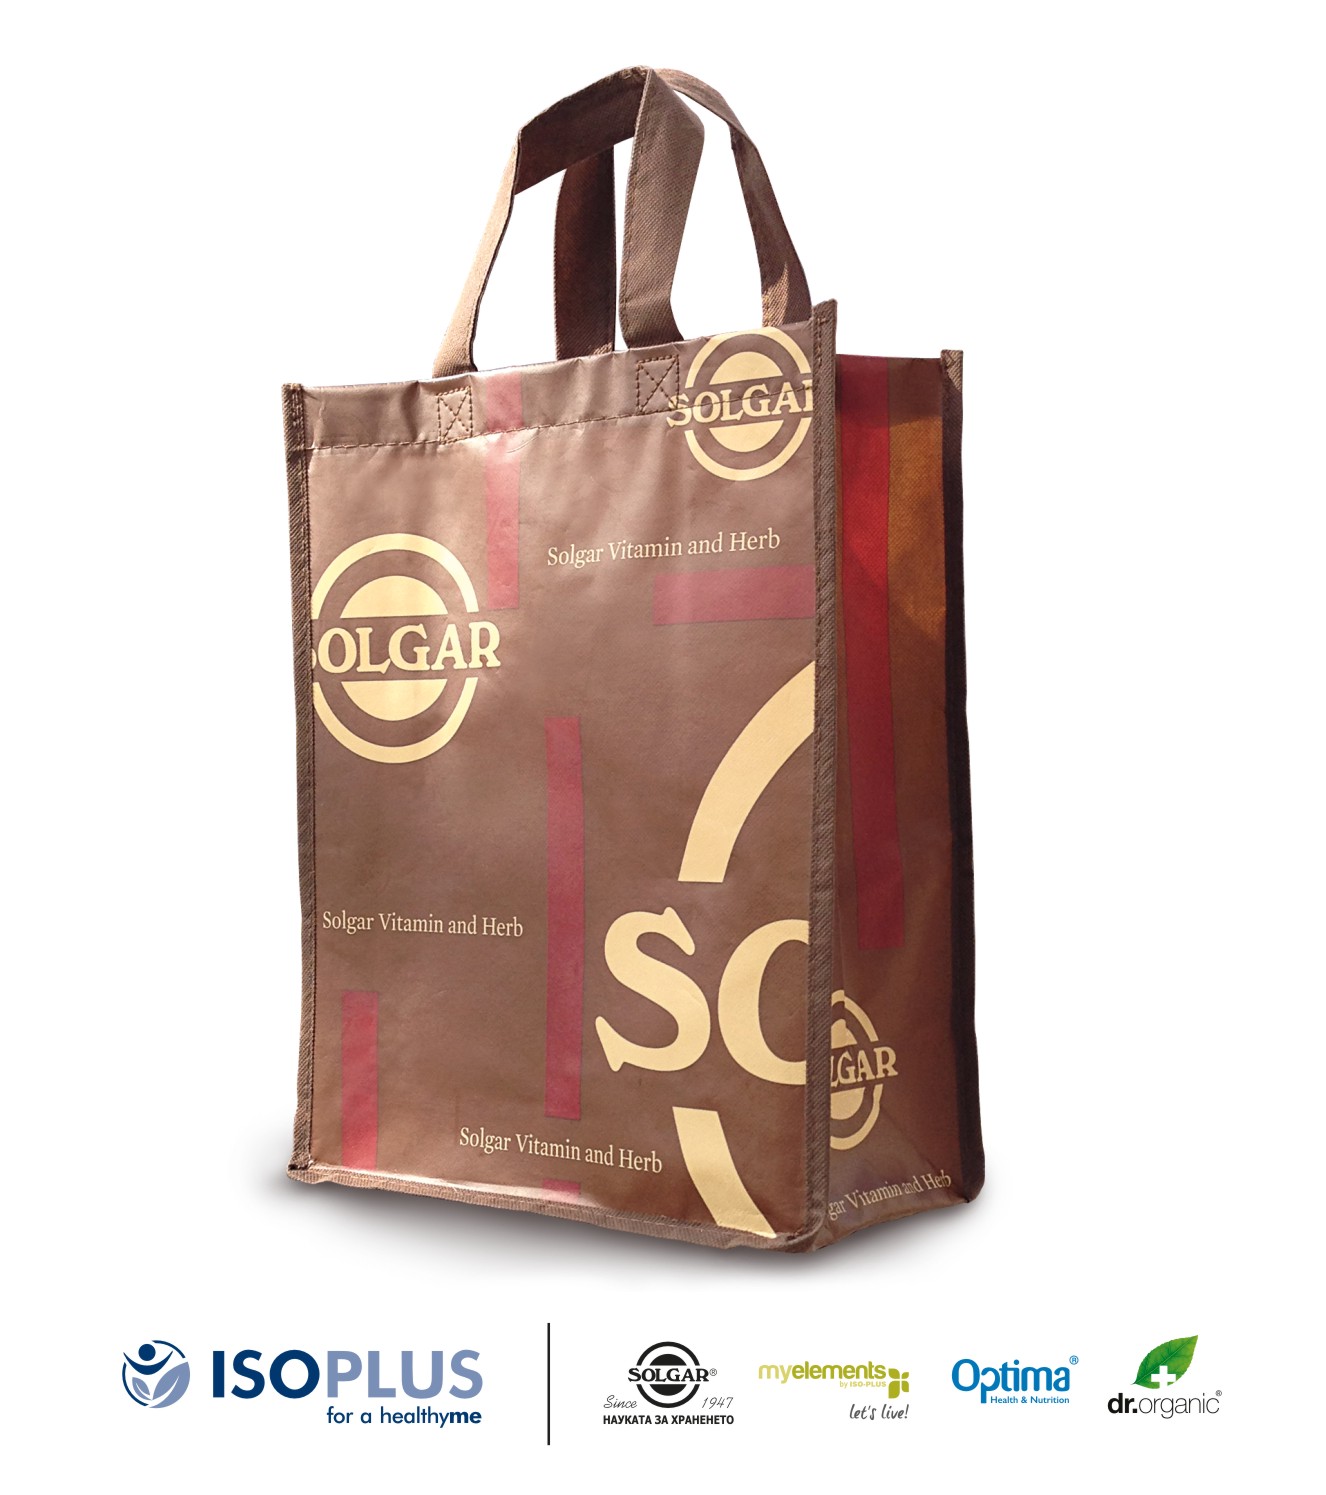 Практична чанта Solgar като подарък от ISOPLUS!